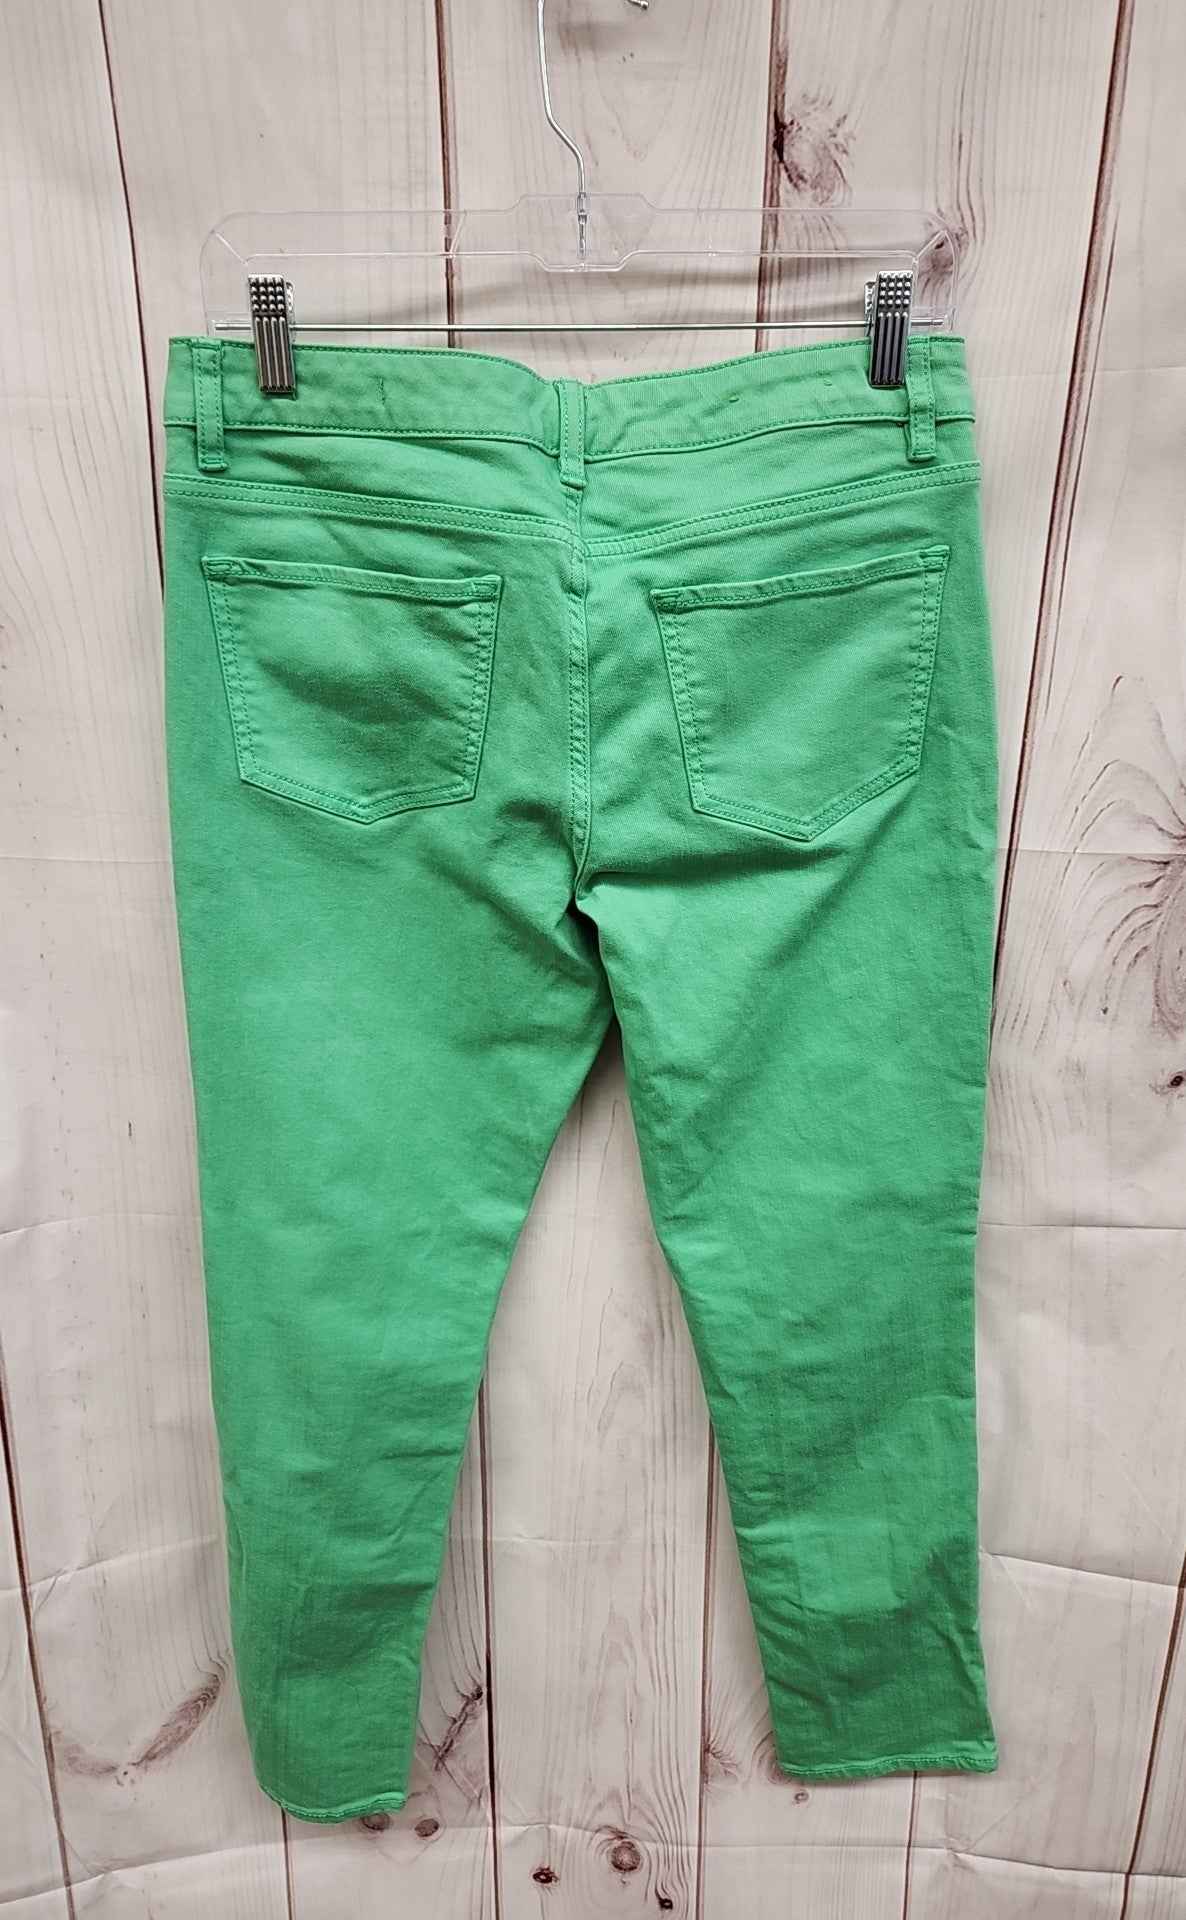 C Women's Size 29 (7-8) Skinny Crop Green Jeans